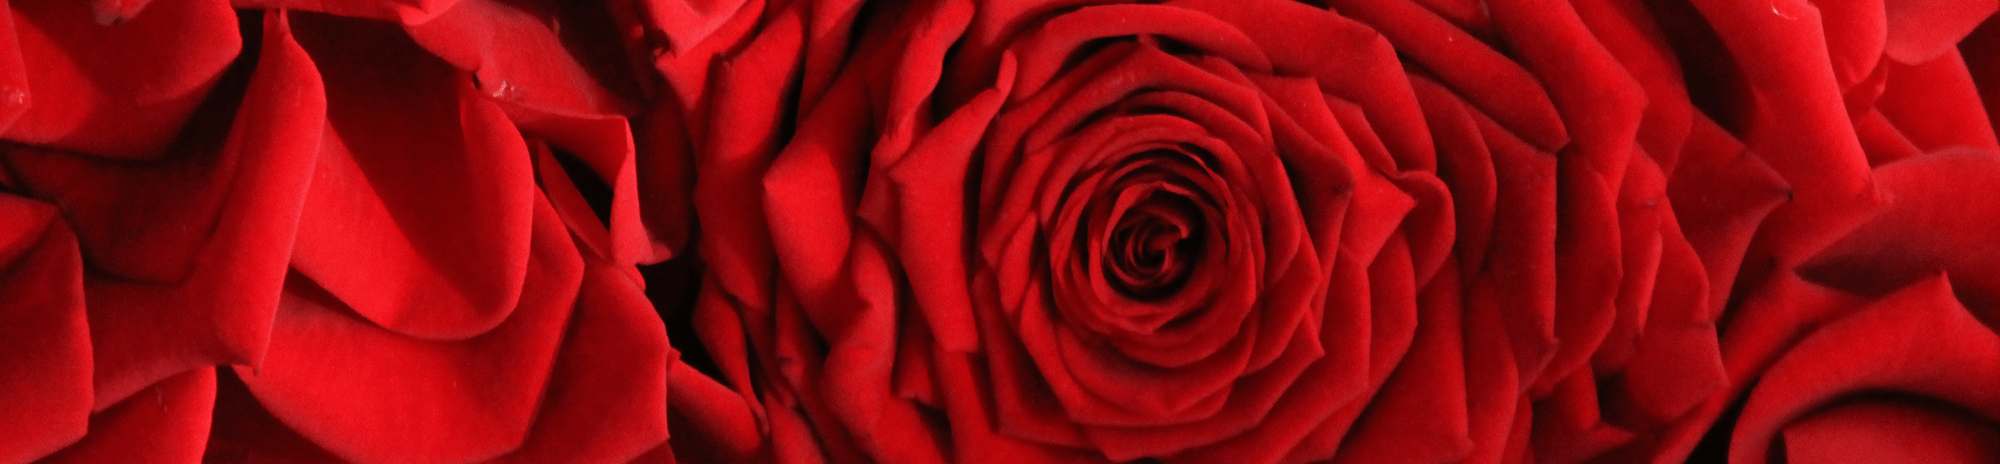 La rosa red naomi.